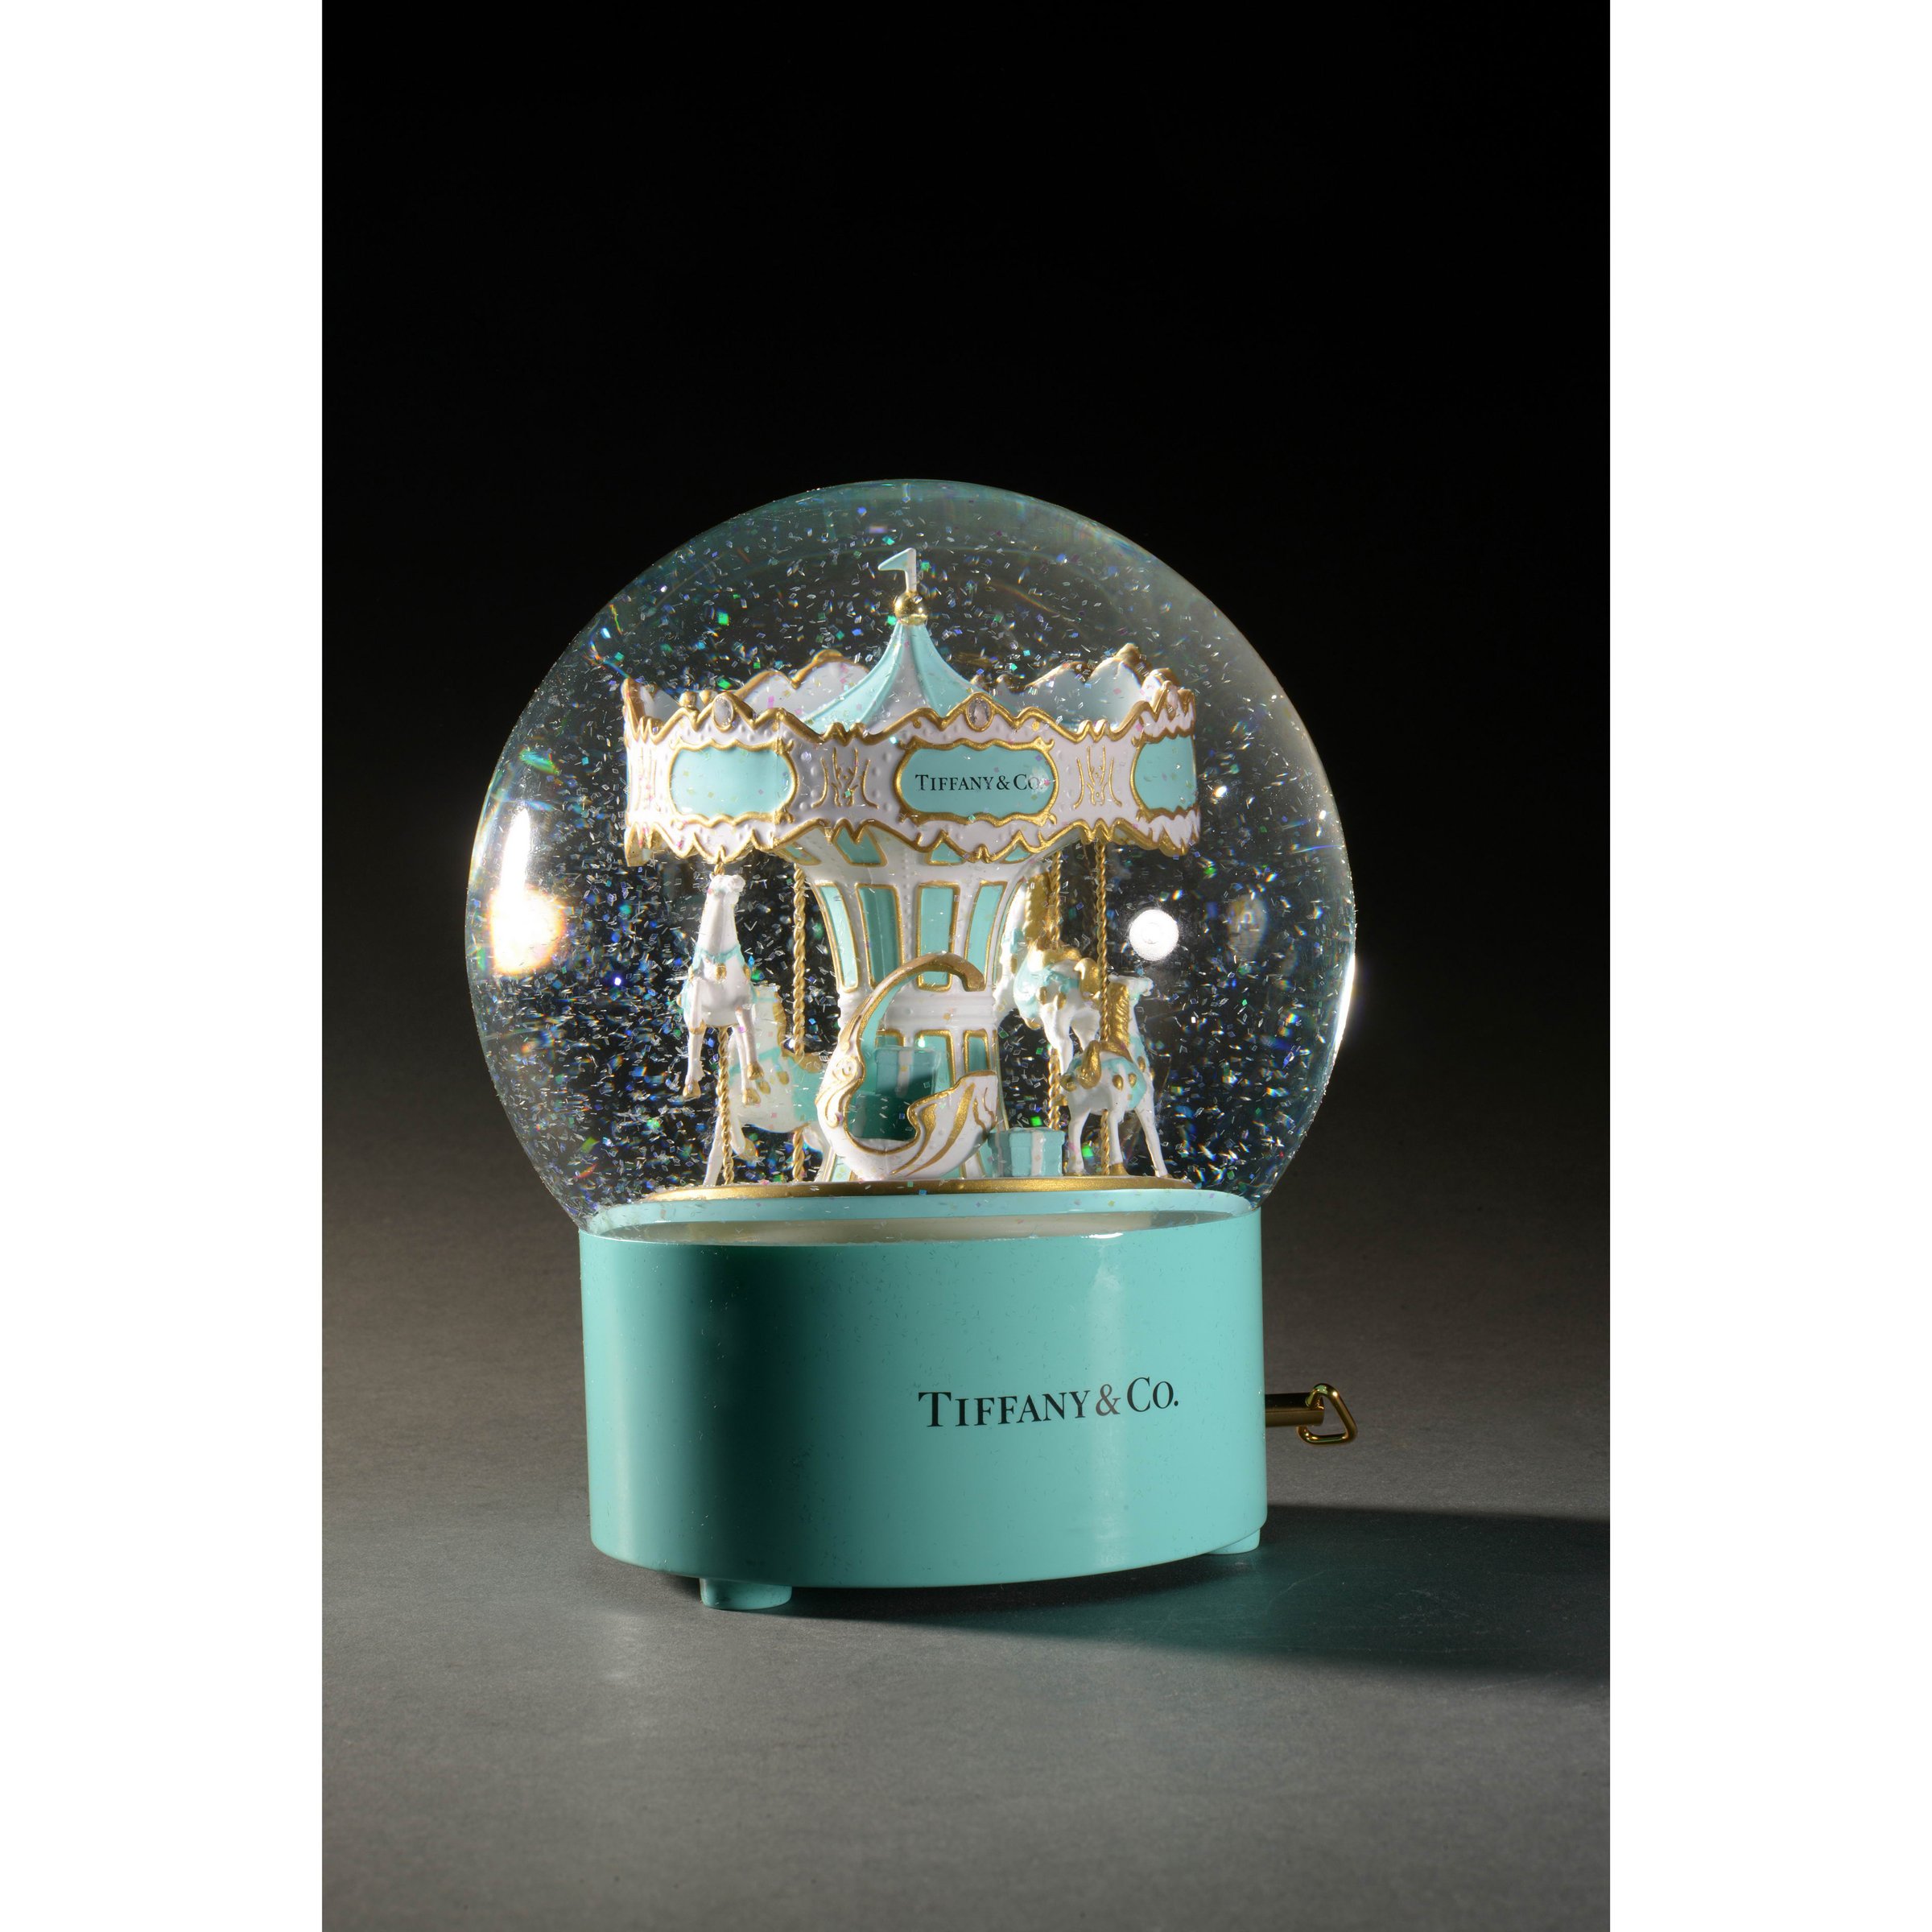 Sold at Auction: Vintage Louis Vuitton Snow Globe